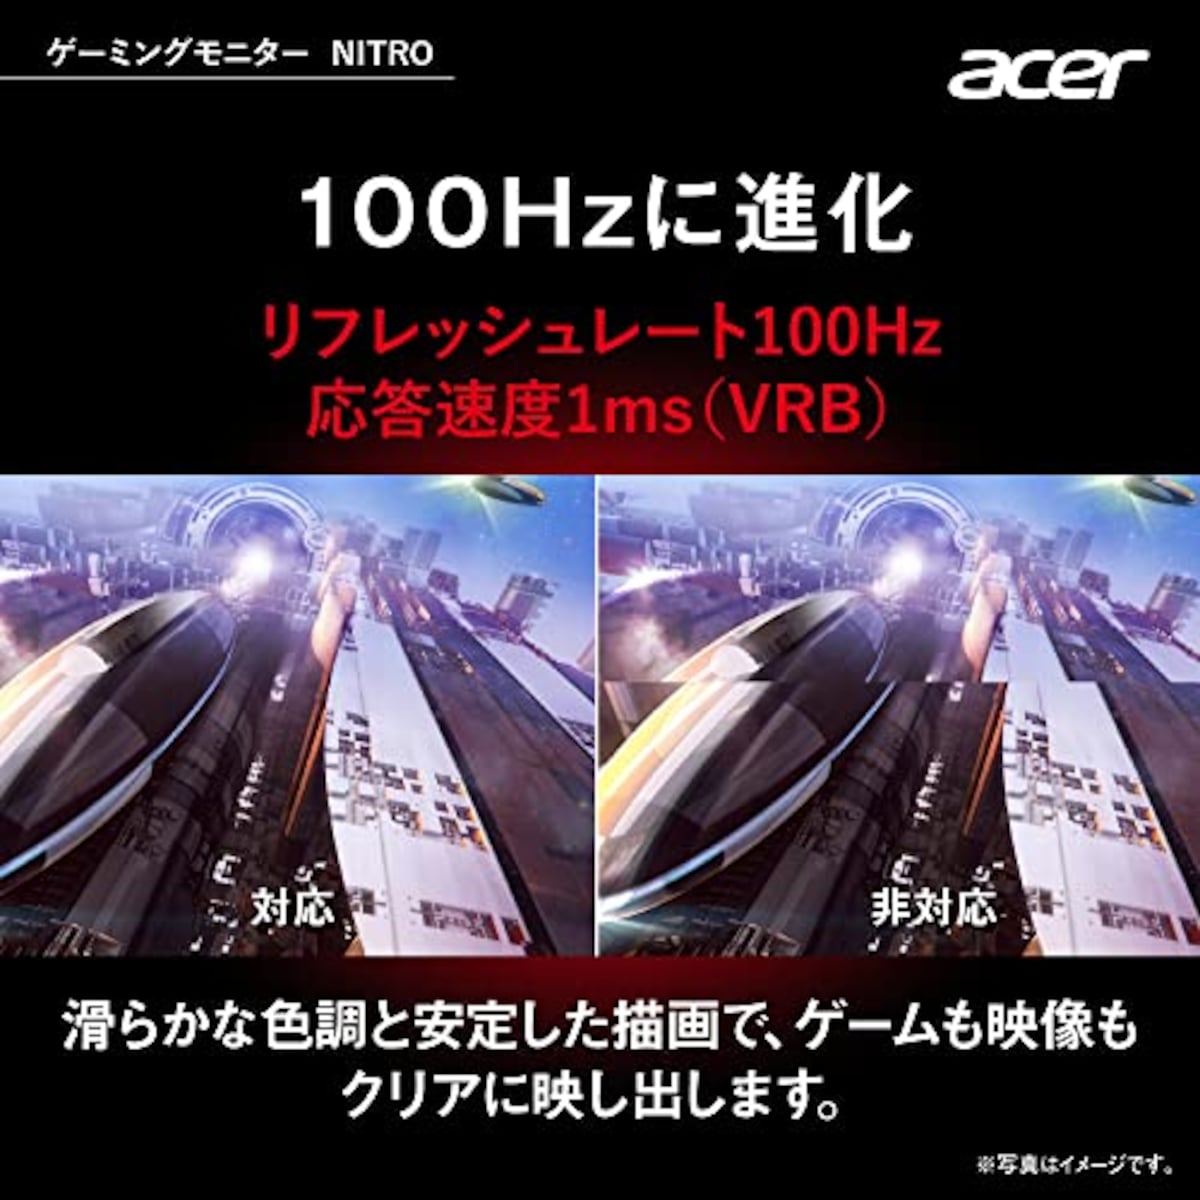  日本エイサー 【Amazon.co.jp限定】 Acer ゲーミングモニター Nitro KG241YHbmiix 23.8インチ VA 非光沢 フルHD 100Hz 1ms(VRB) HDMI ミニD-Sub15 VESAマウント対応 スピーカー内蔵 ヘッドホン端子 AMD FreeSync画像3 